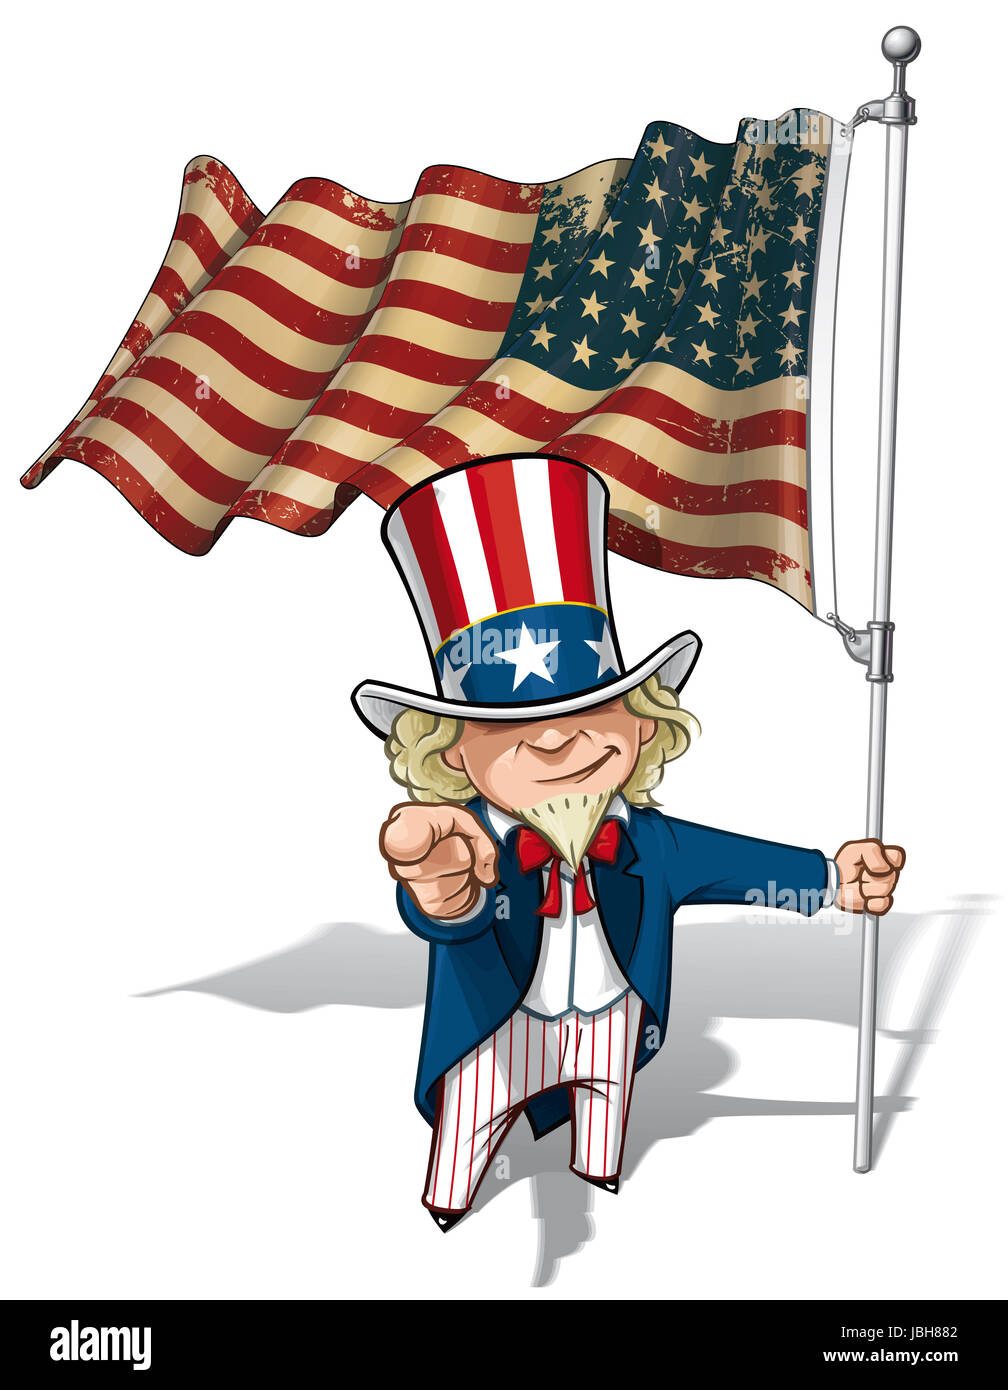 Vector Cartoon Illustration von Uncle Sam hält eine 48 Sterne amerikanische Fahne zeigen, "Ich will dich". Dies war die Flagge der Vereinigten Staaten im zweiten Weltkrieg und dem Koreakrieg. Flagge von Textur und Farbe Sepia können entfernt werden, durch die jeweiligen Layer deaktivieren. Stockfoto